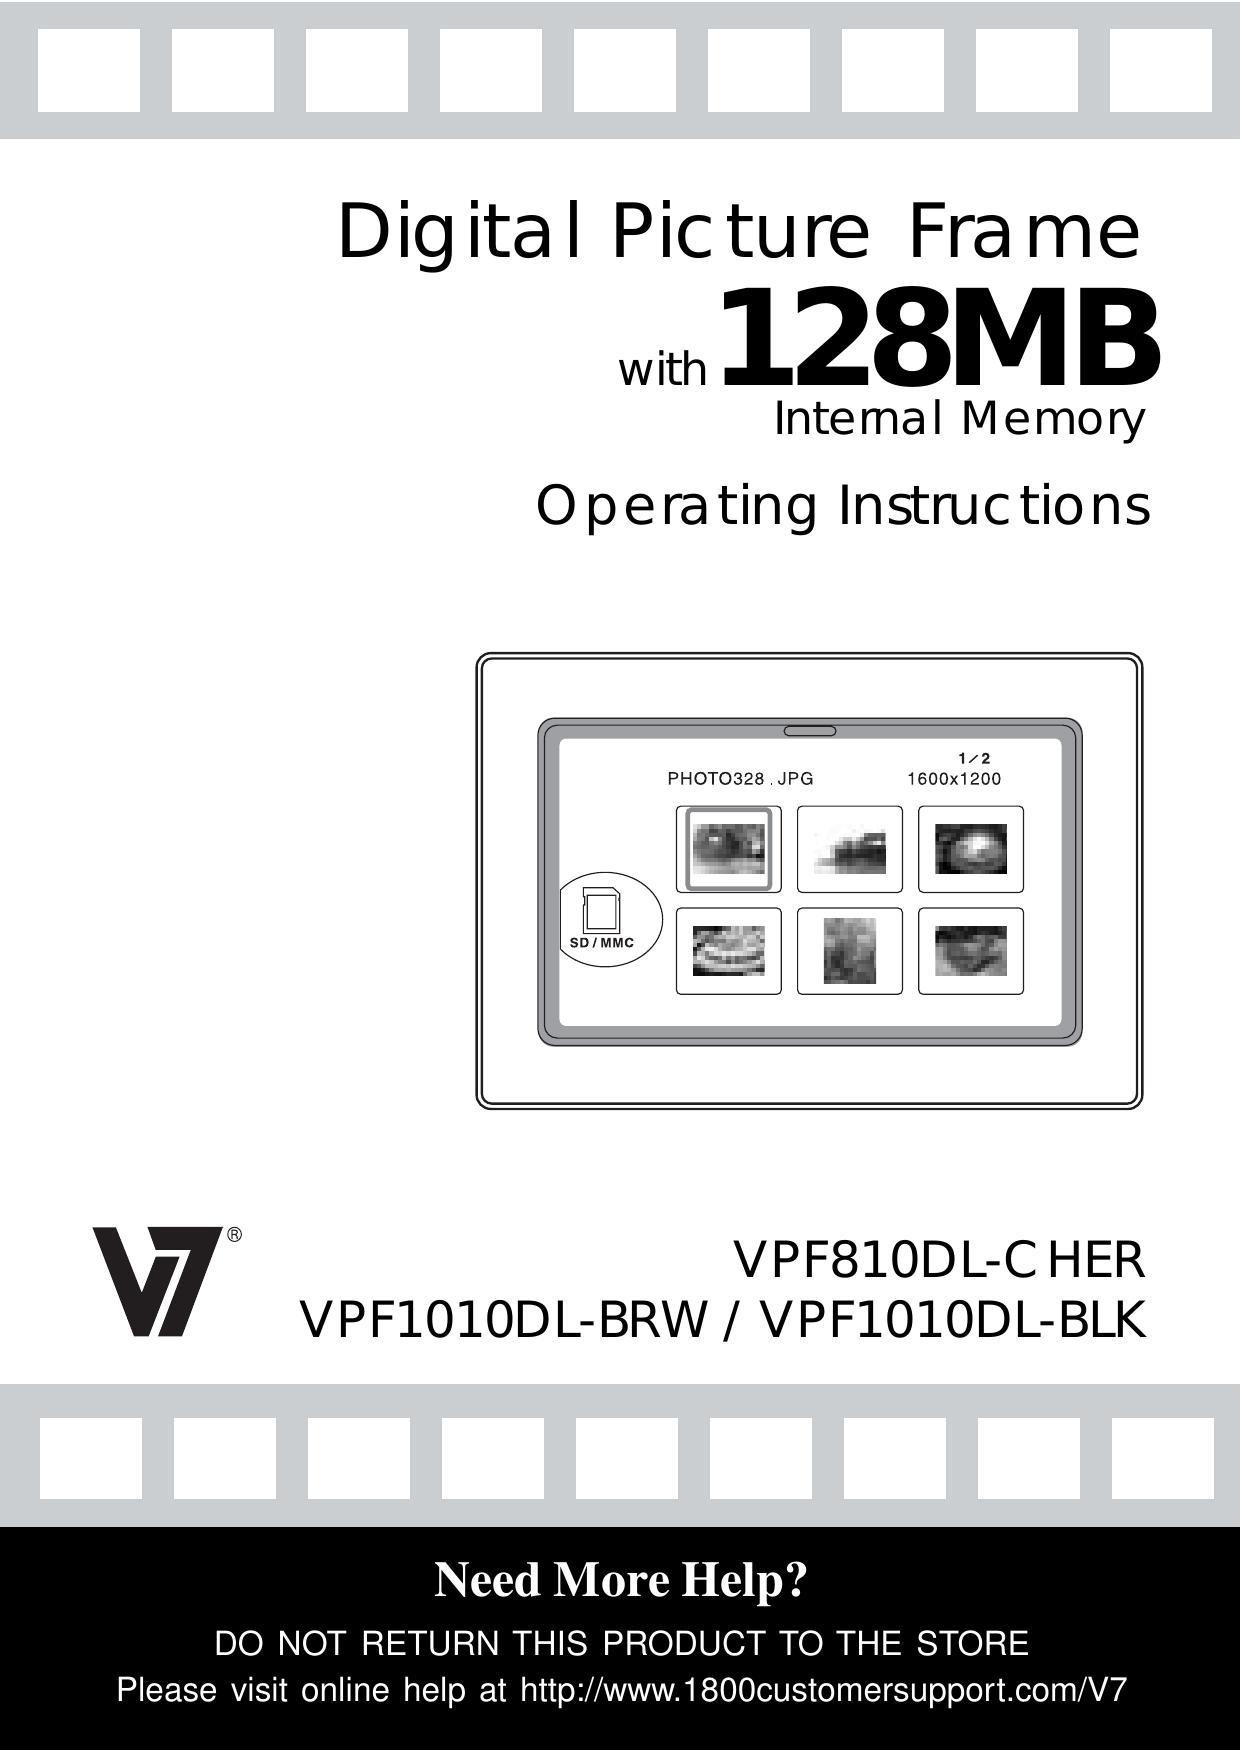 Venturer VPF810DL-CHER Digital Photo Frame User Manual